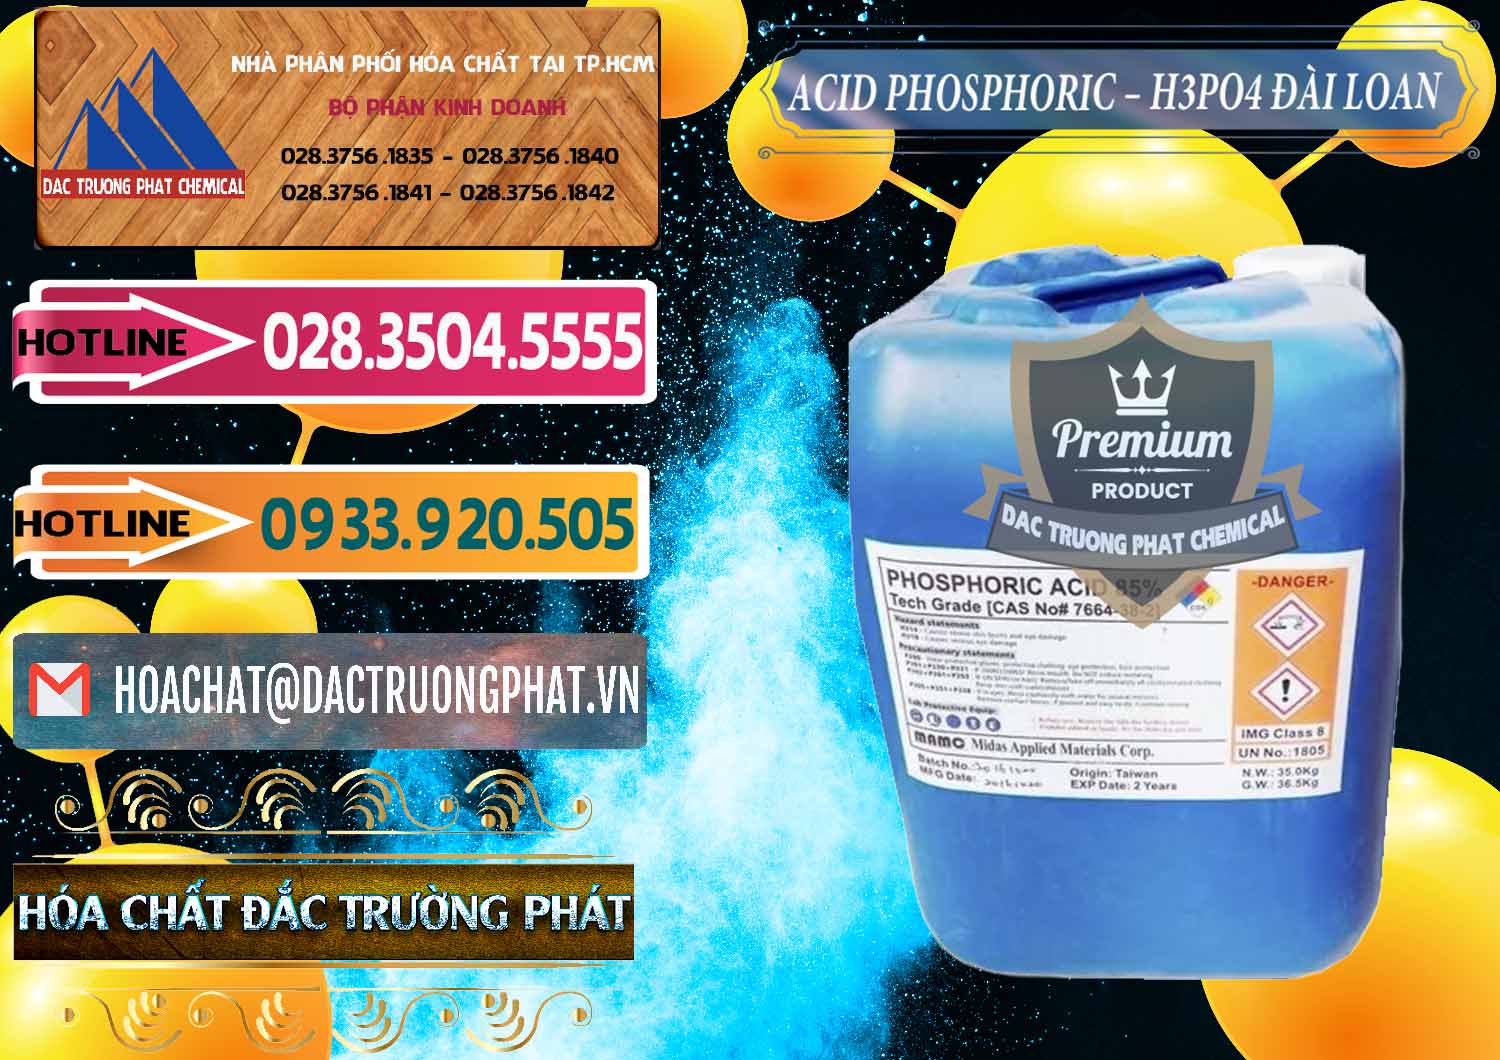 Cty chuyên cung ứng _ bán Axit Phosphoric - Acid Phosphoric H3PO4 85% Đài Loan Taiwan - 0351 - Công ty chuyên kinh doanh và phân phối hóa chất tại TP.HCM - dactruongphat.vn